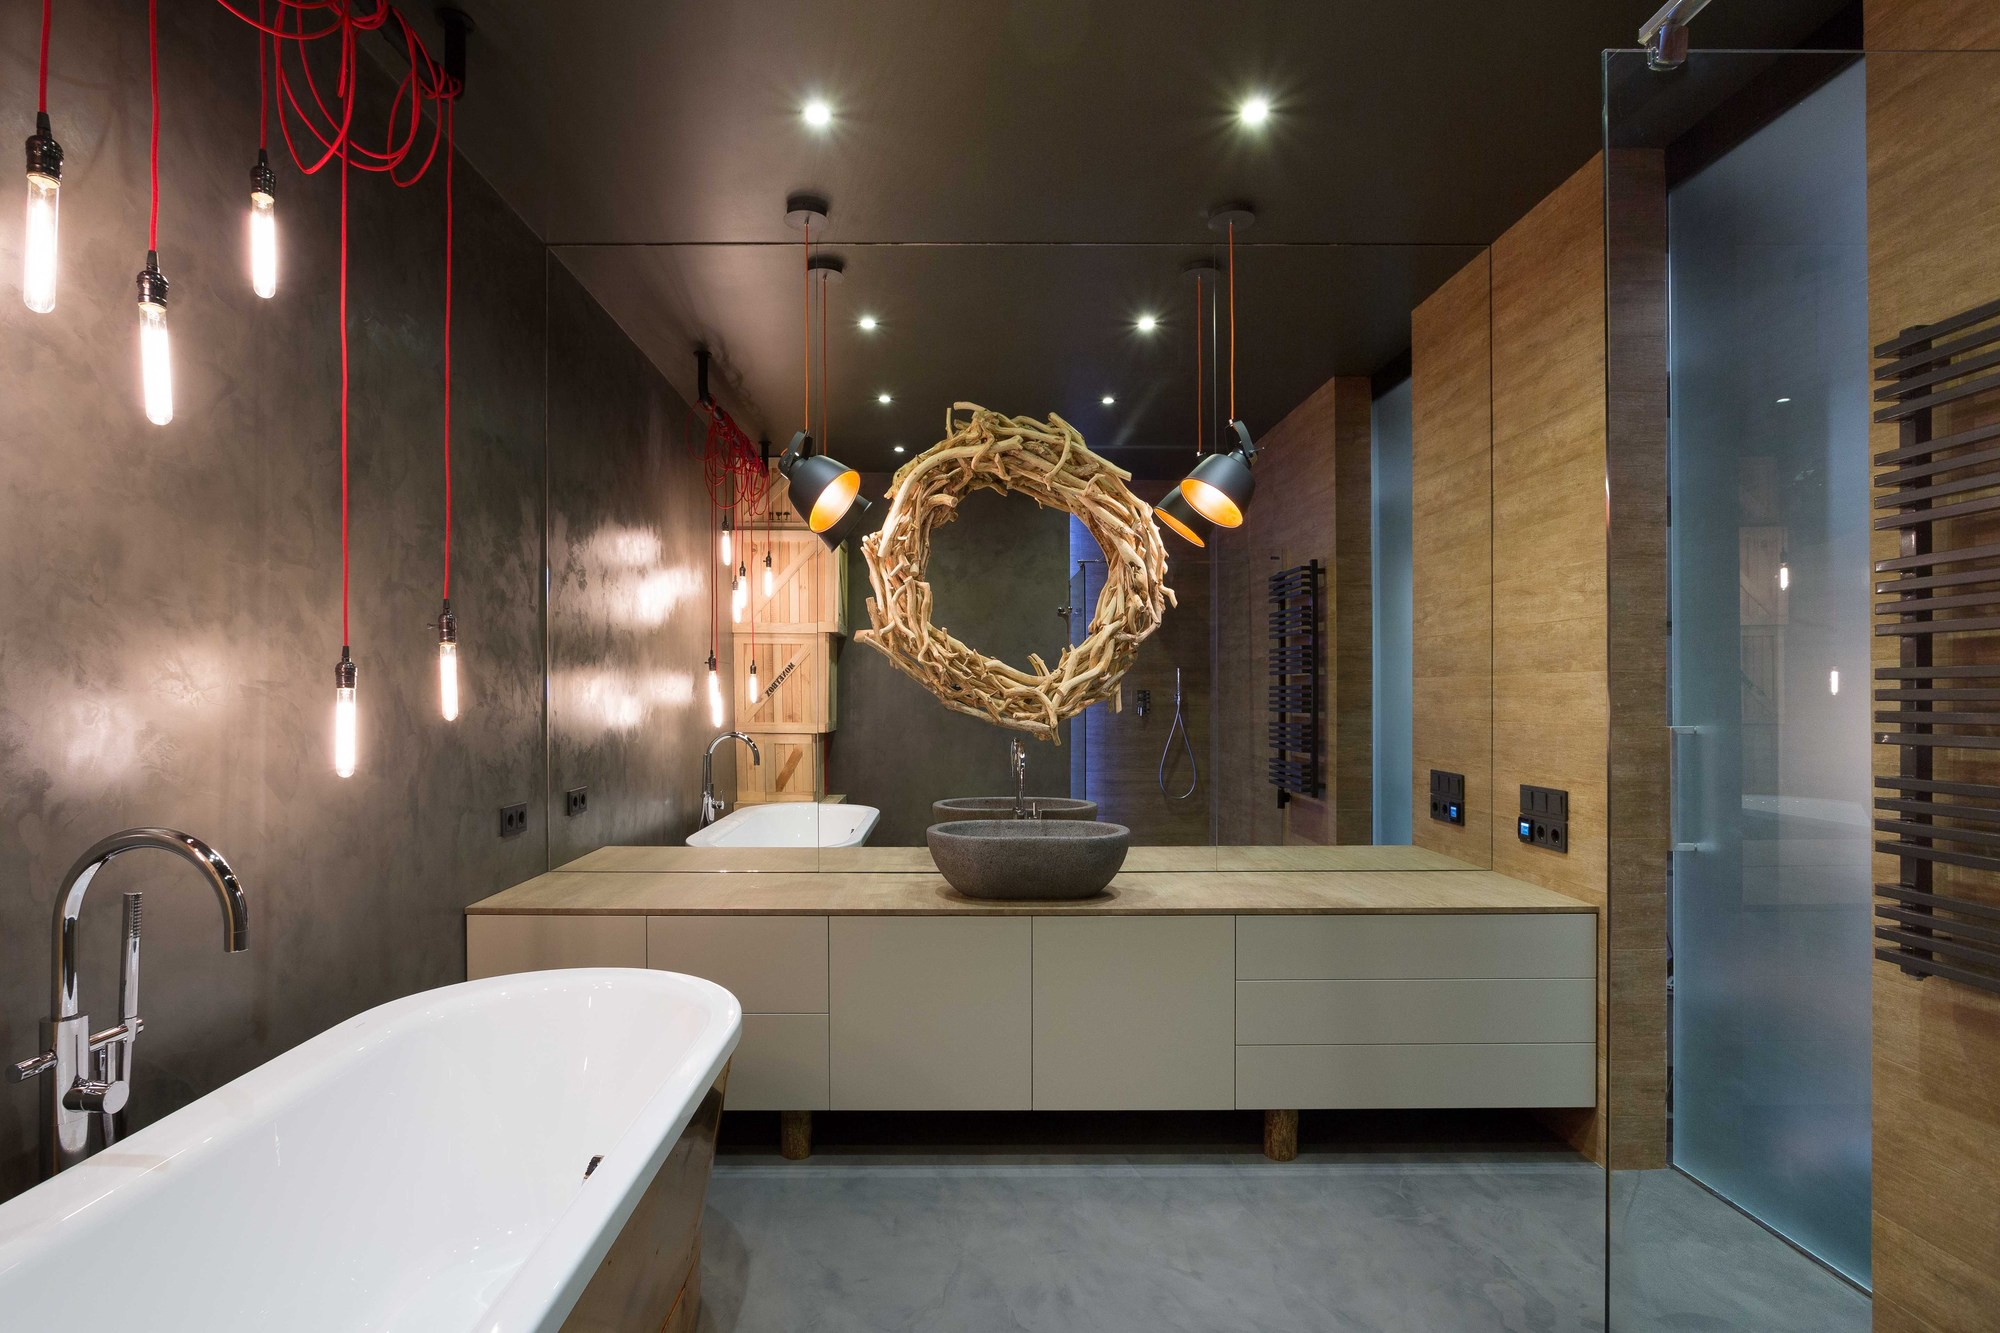 Dunkle Farben, einfache Sanitärformen, flächenbündige Badezimmerschränke, originelles Beleuchtungssystem bestimmen den Gesamtstil des Lofts